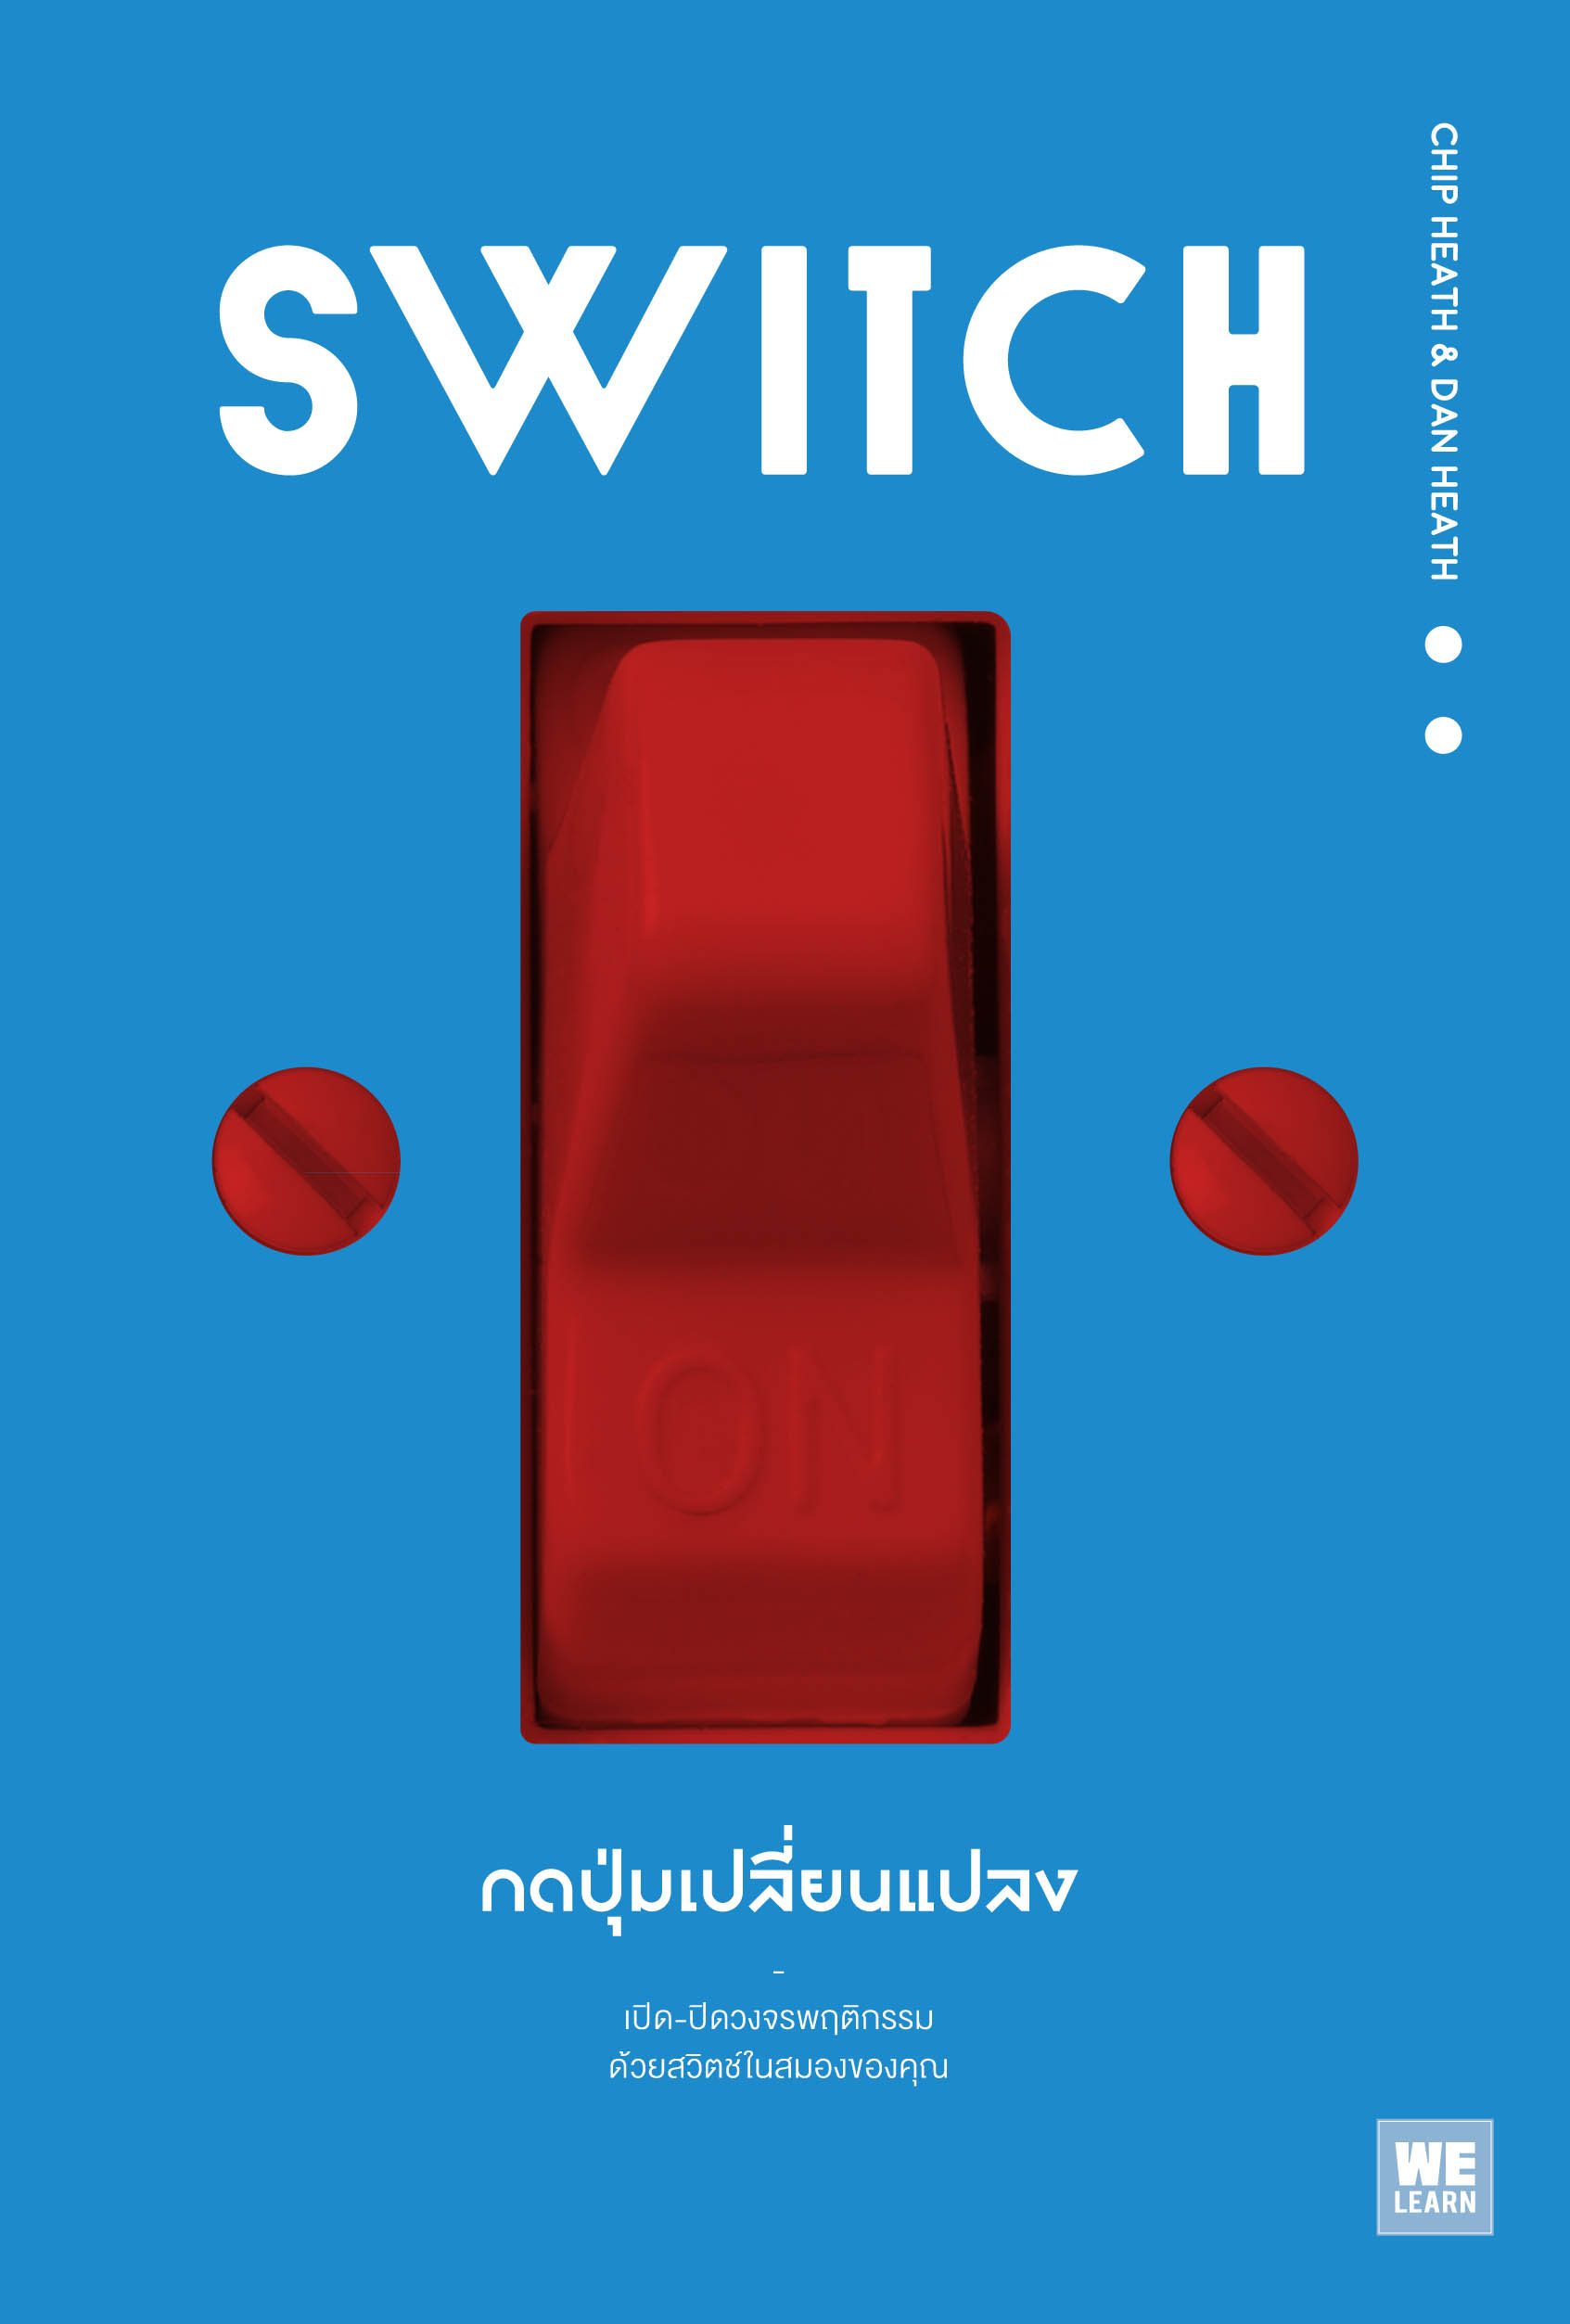 กดปุ่มเปลี่ยนแปลง  (Switch)